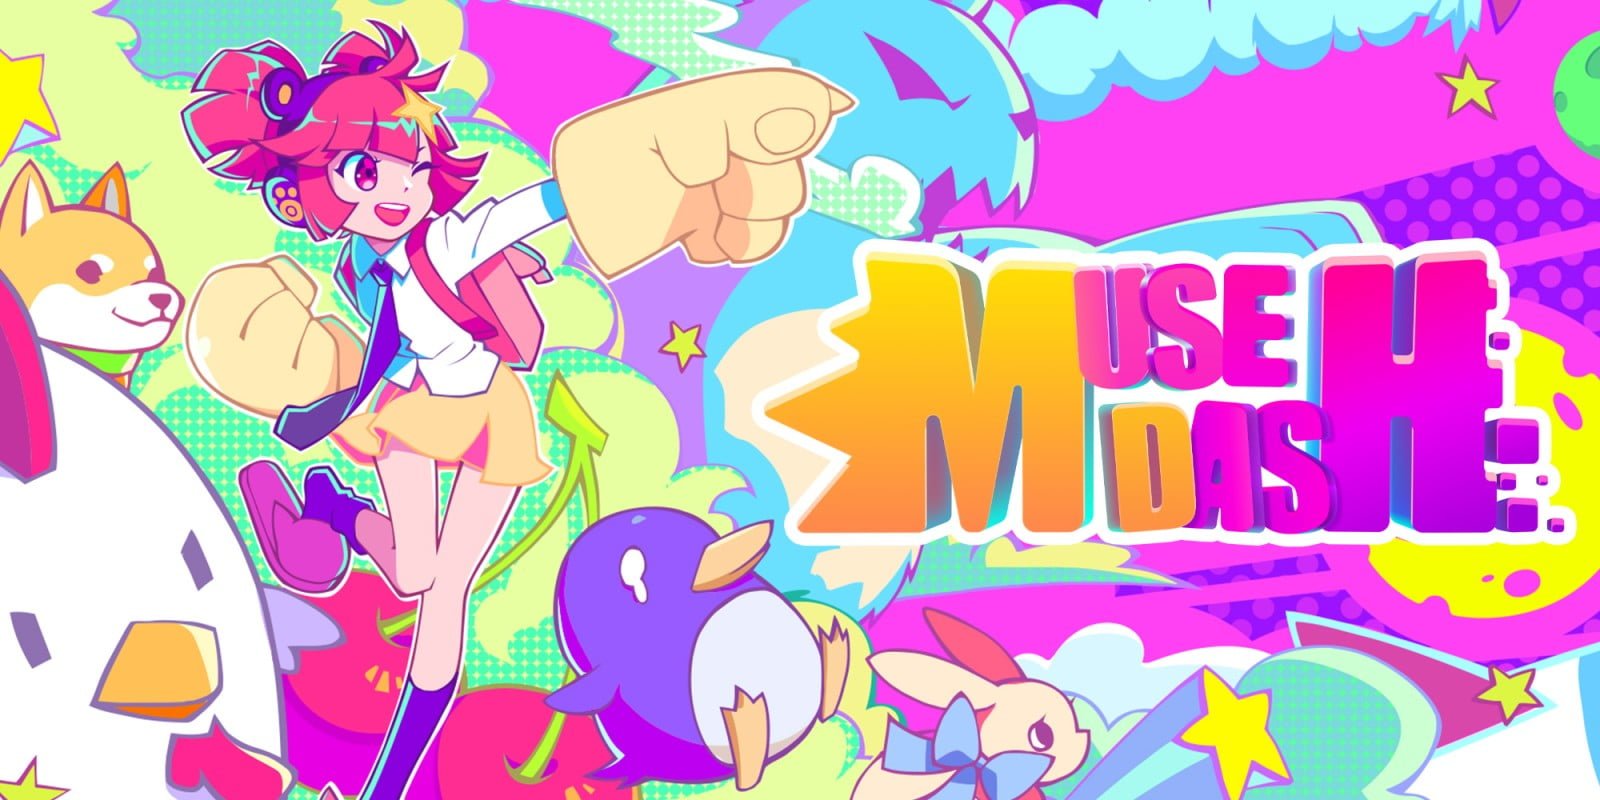 Phiên bản PC Muse Dash Full Game Tải xuống miễn phí 2019